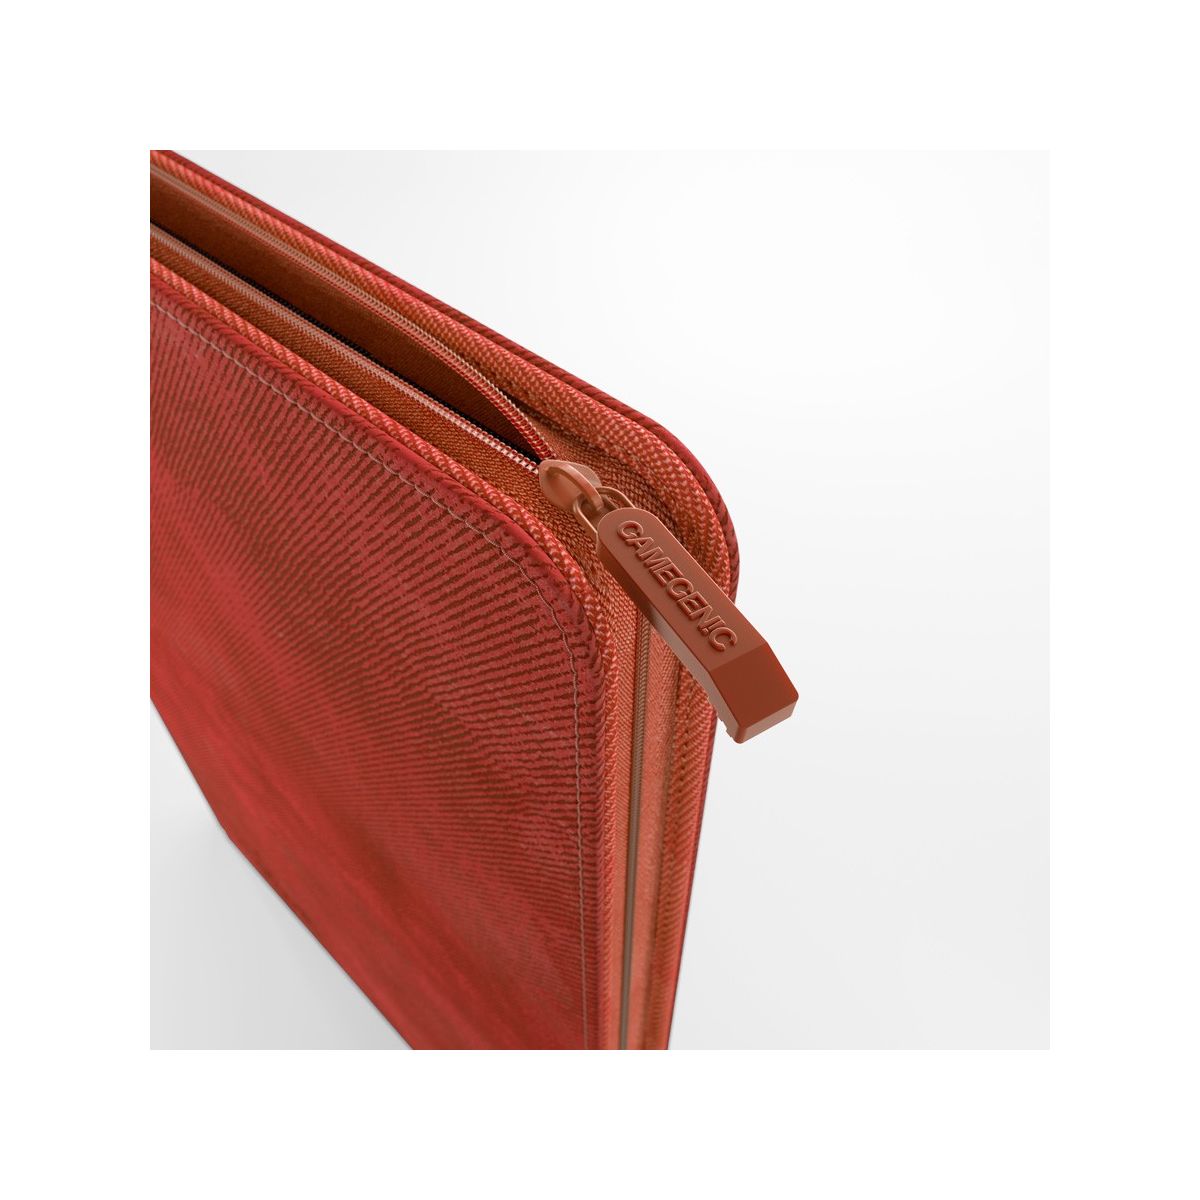 Gamegenic: Album Zip 8 Pocket Red